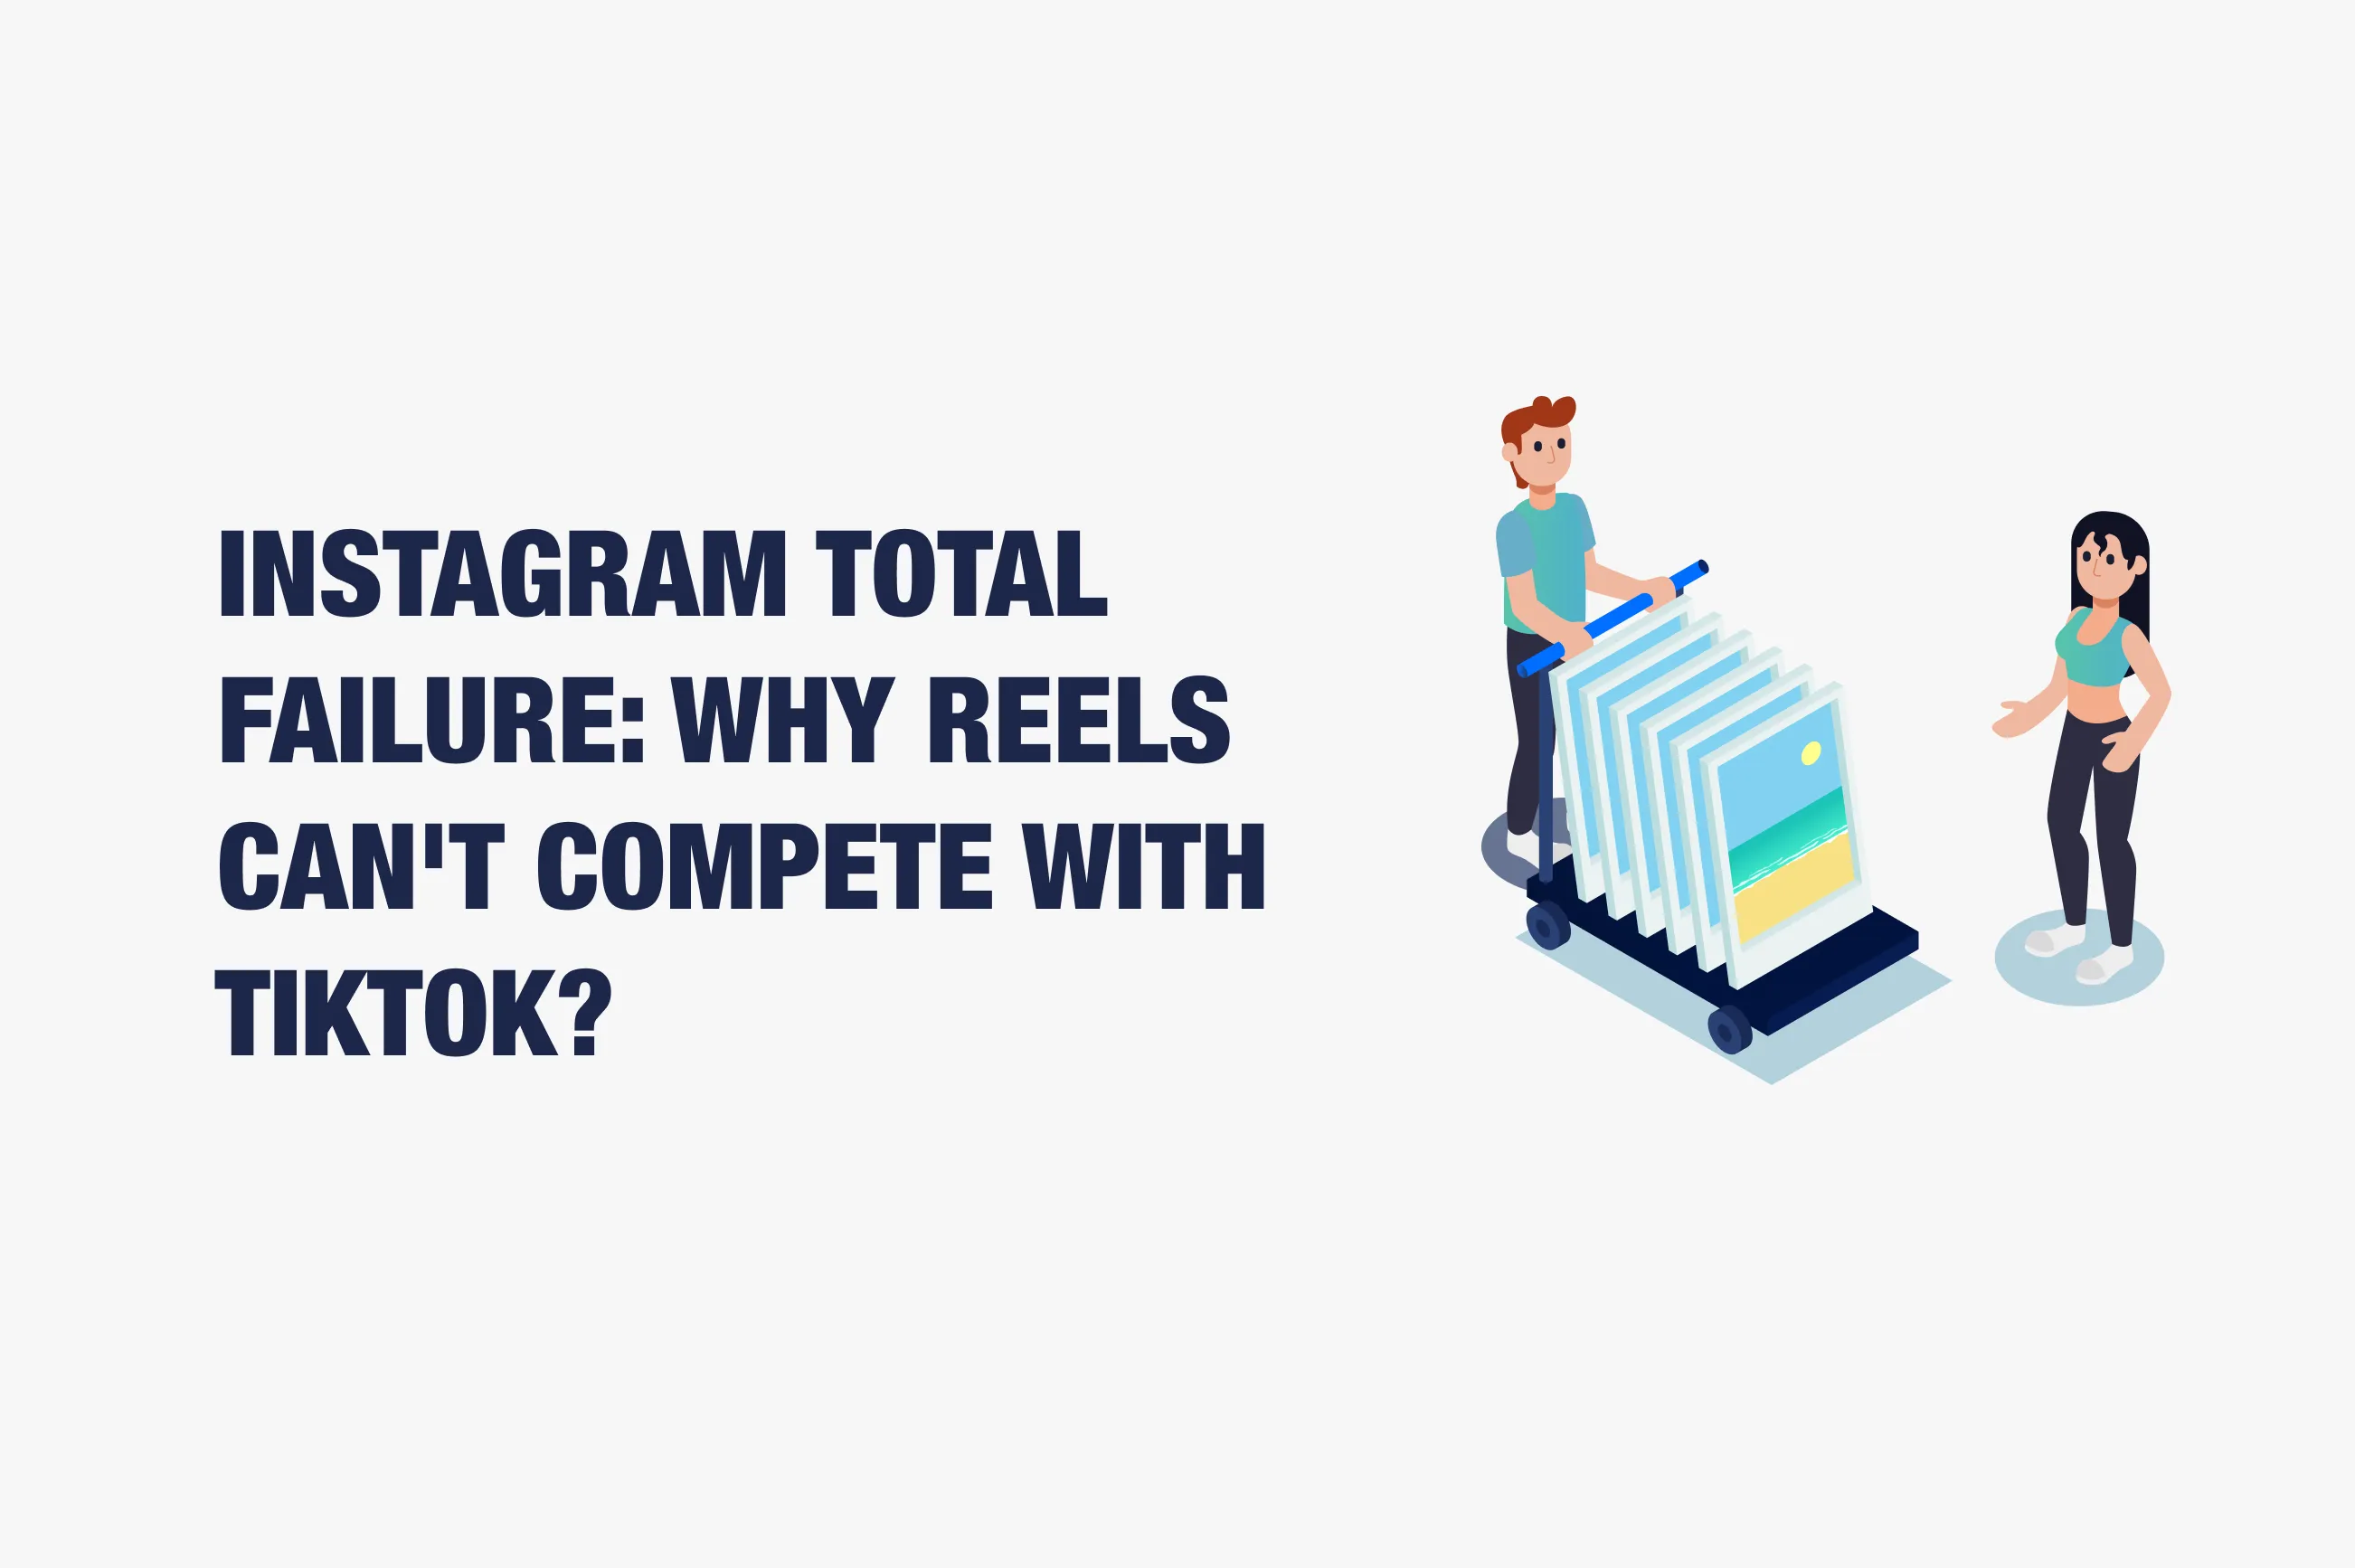 Instagram Users Didn’t Appreciate the Attempt to Mimic TikTok